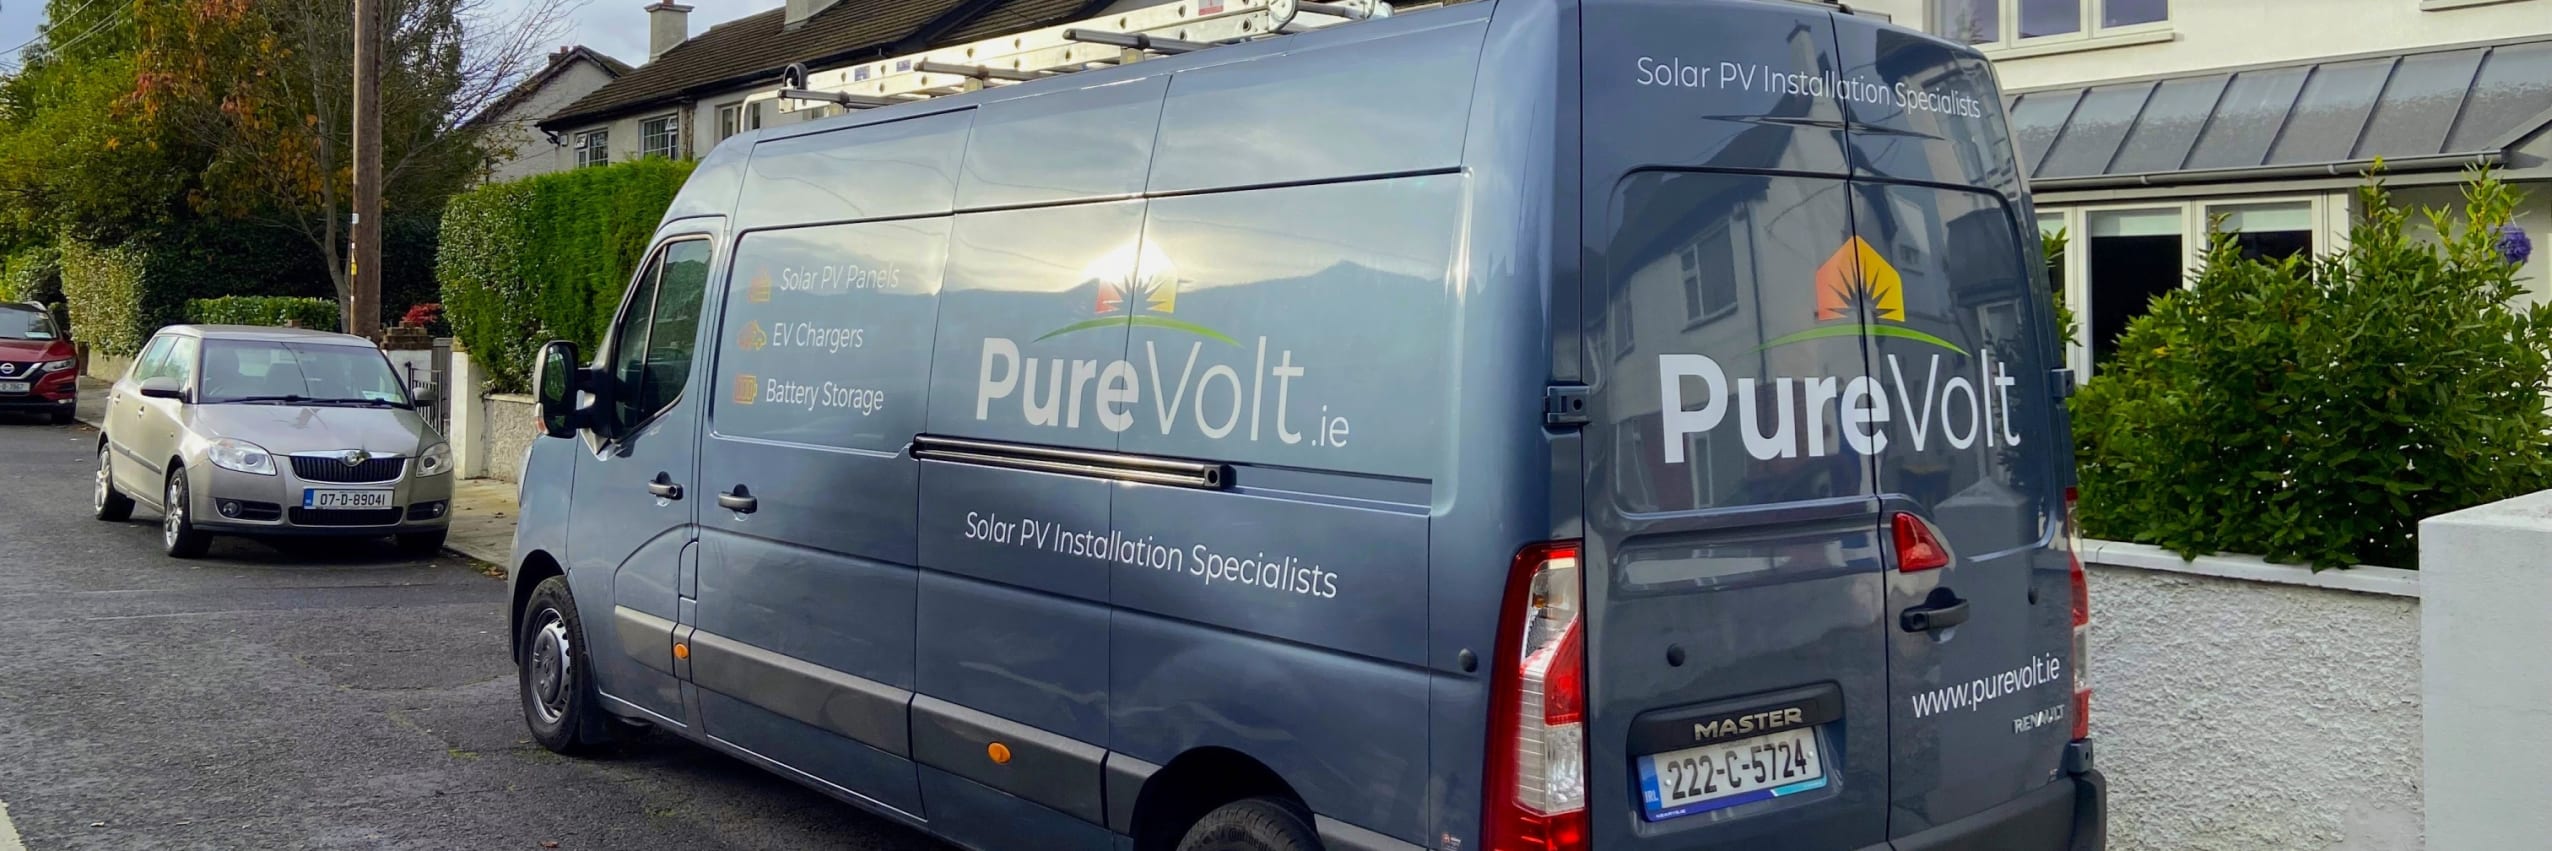 PureVolt van on the road